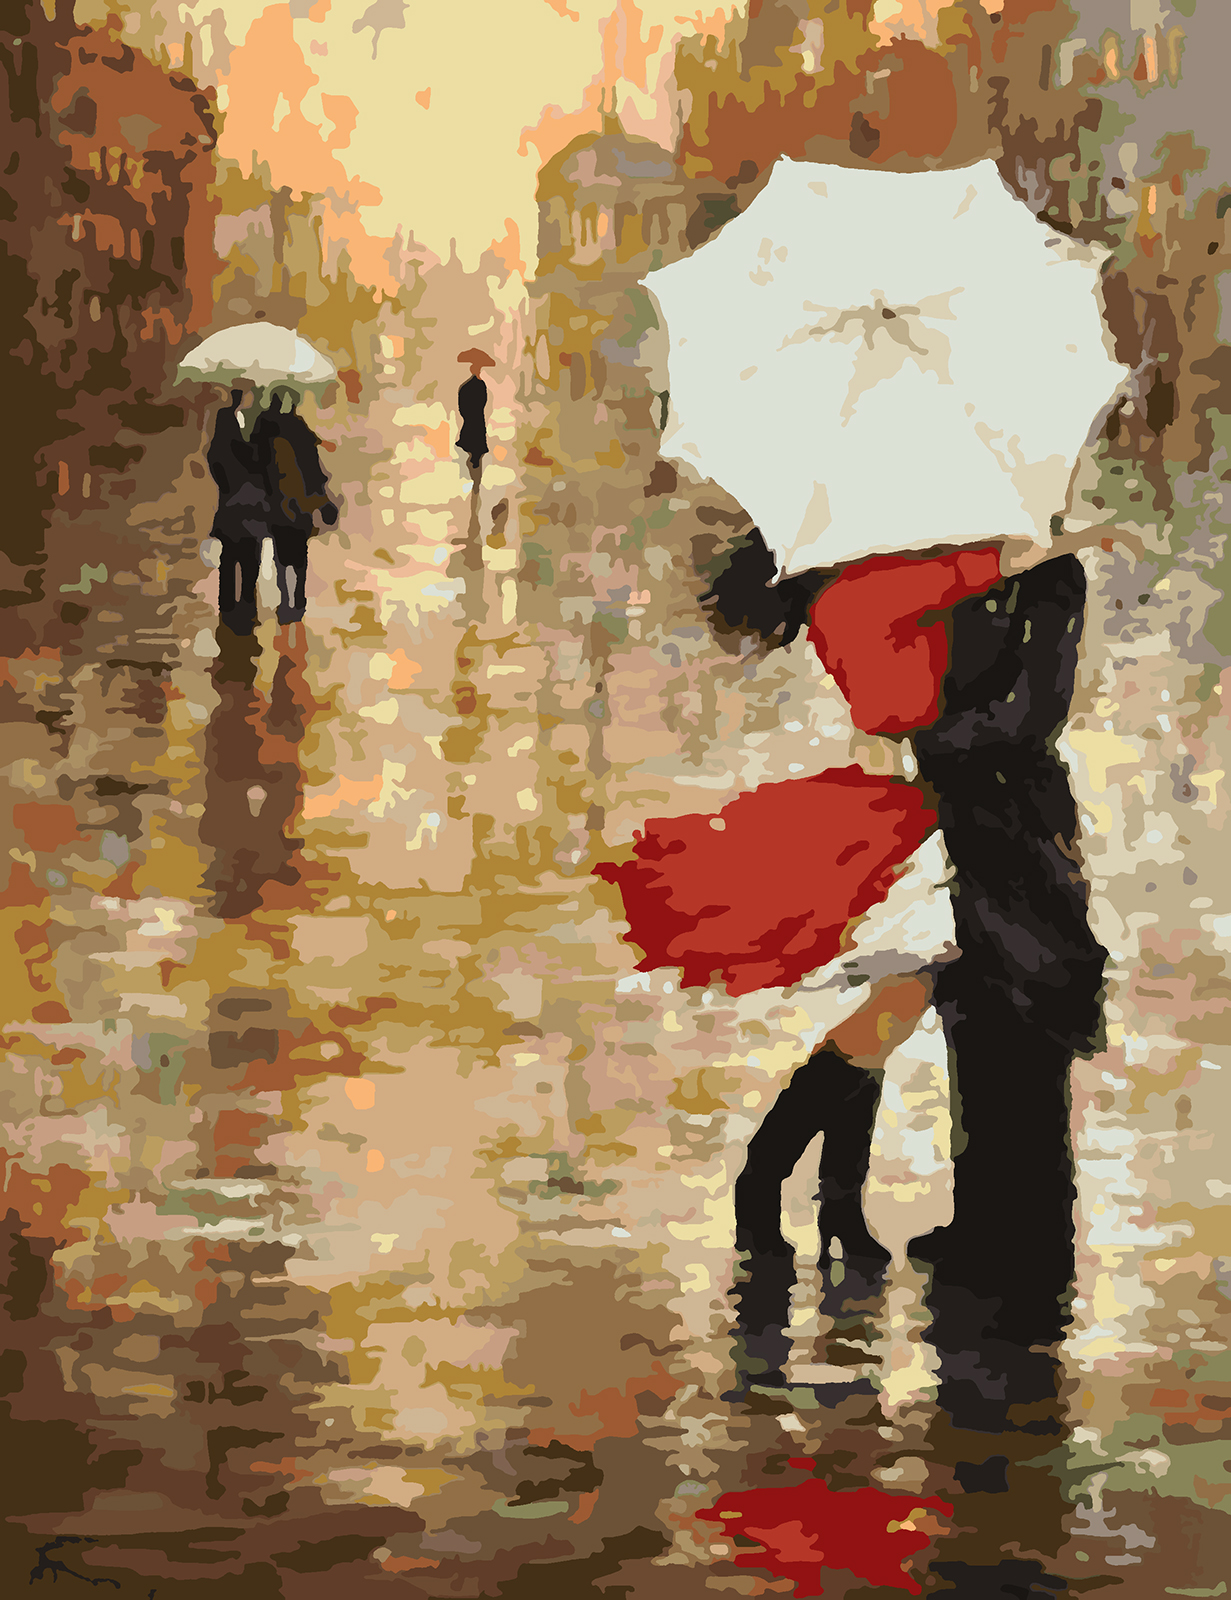 Человек с красным зонтом